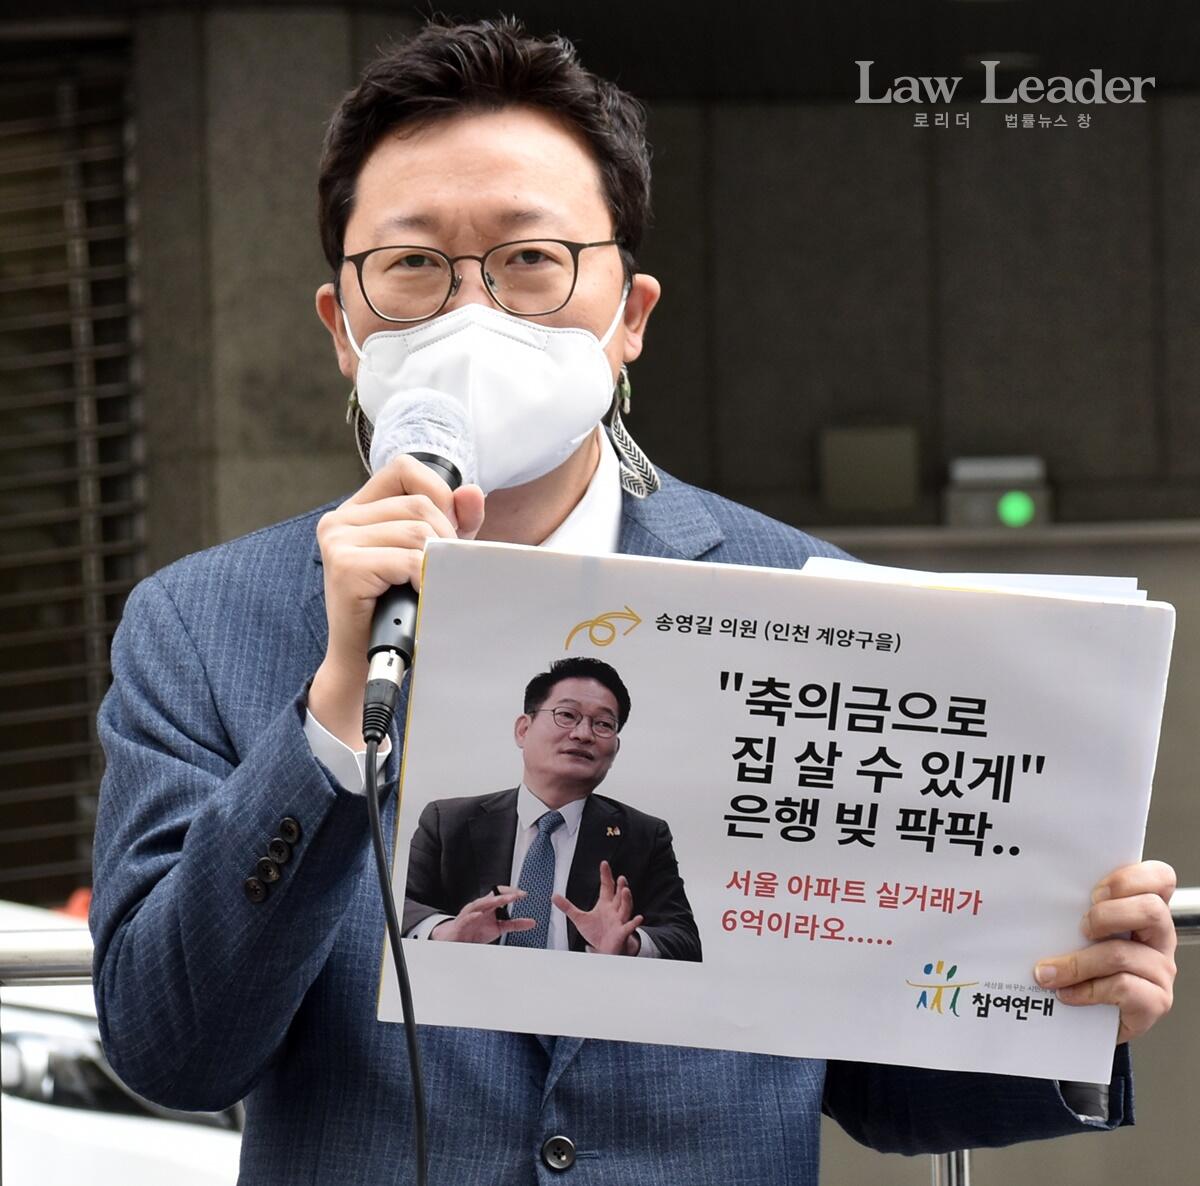 참여연대 민생희망본부 실행위원 박현근 변호사<br>